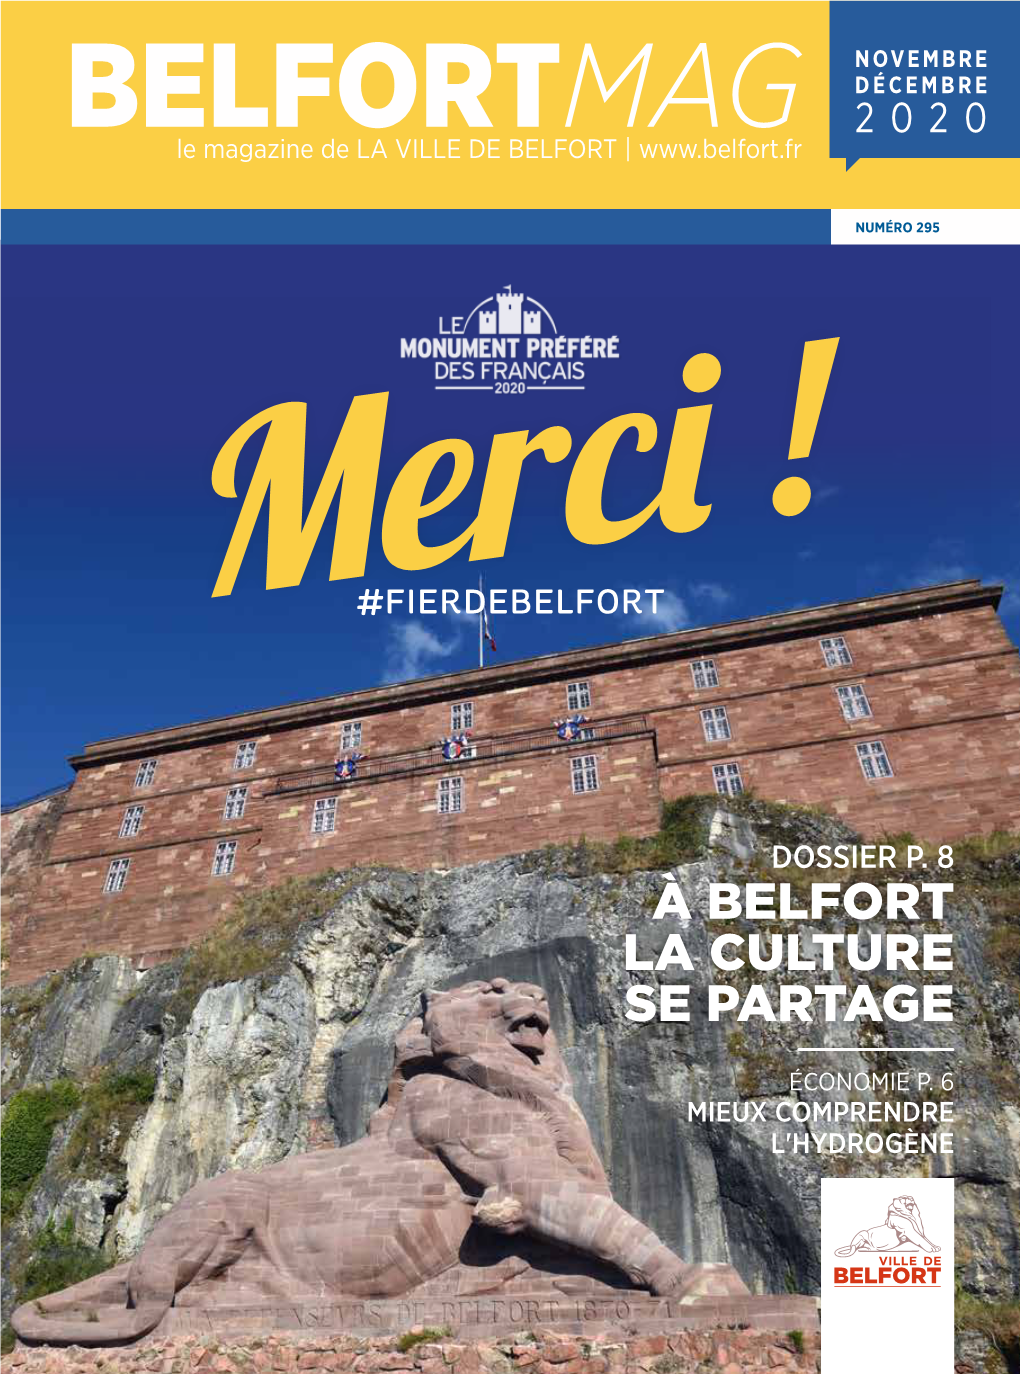 BELFORTMAG 2020 Le Magazine De LA VILLE DE BELFORT |